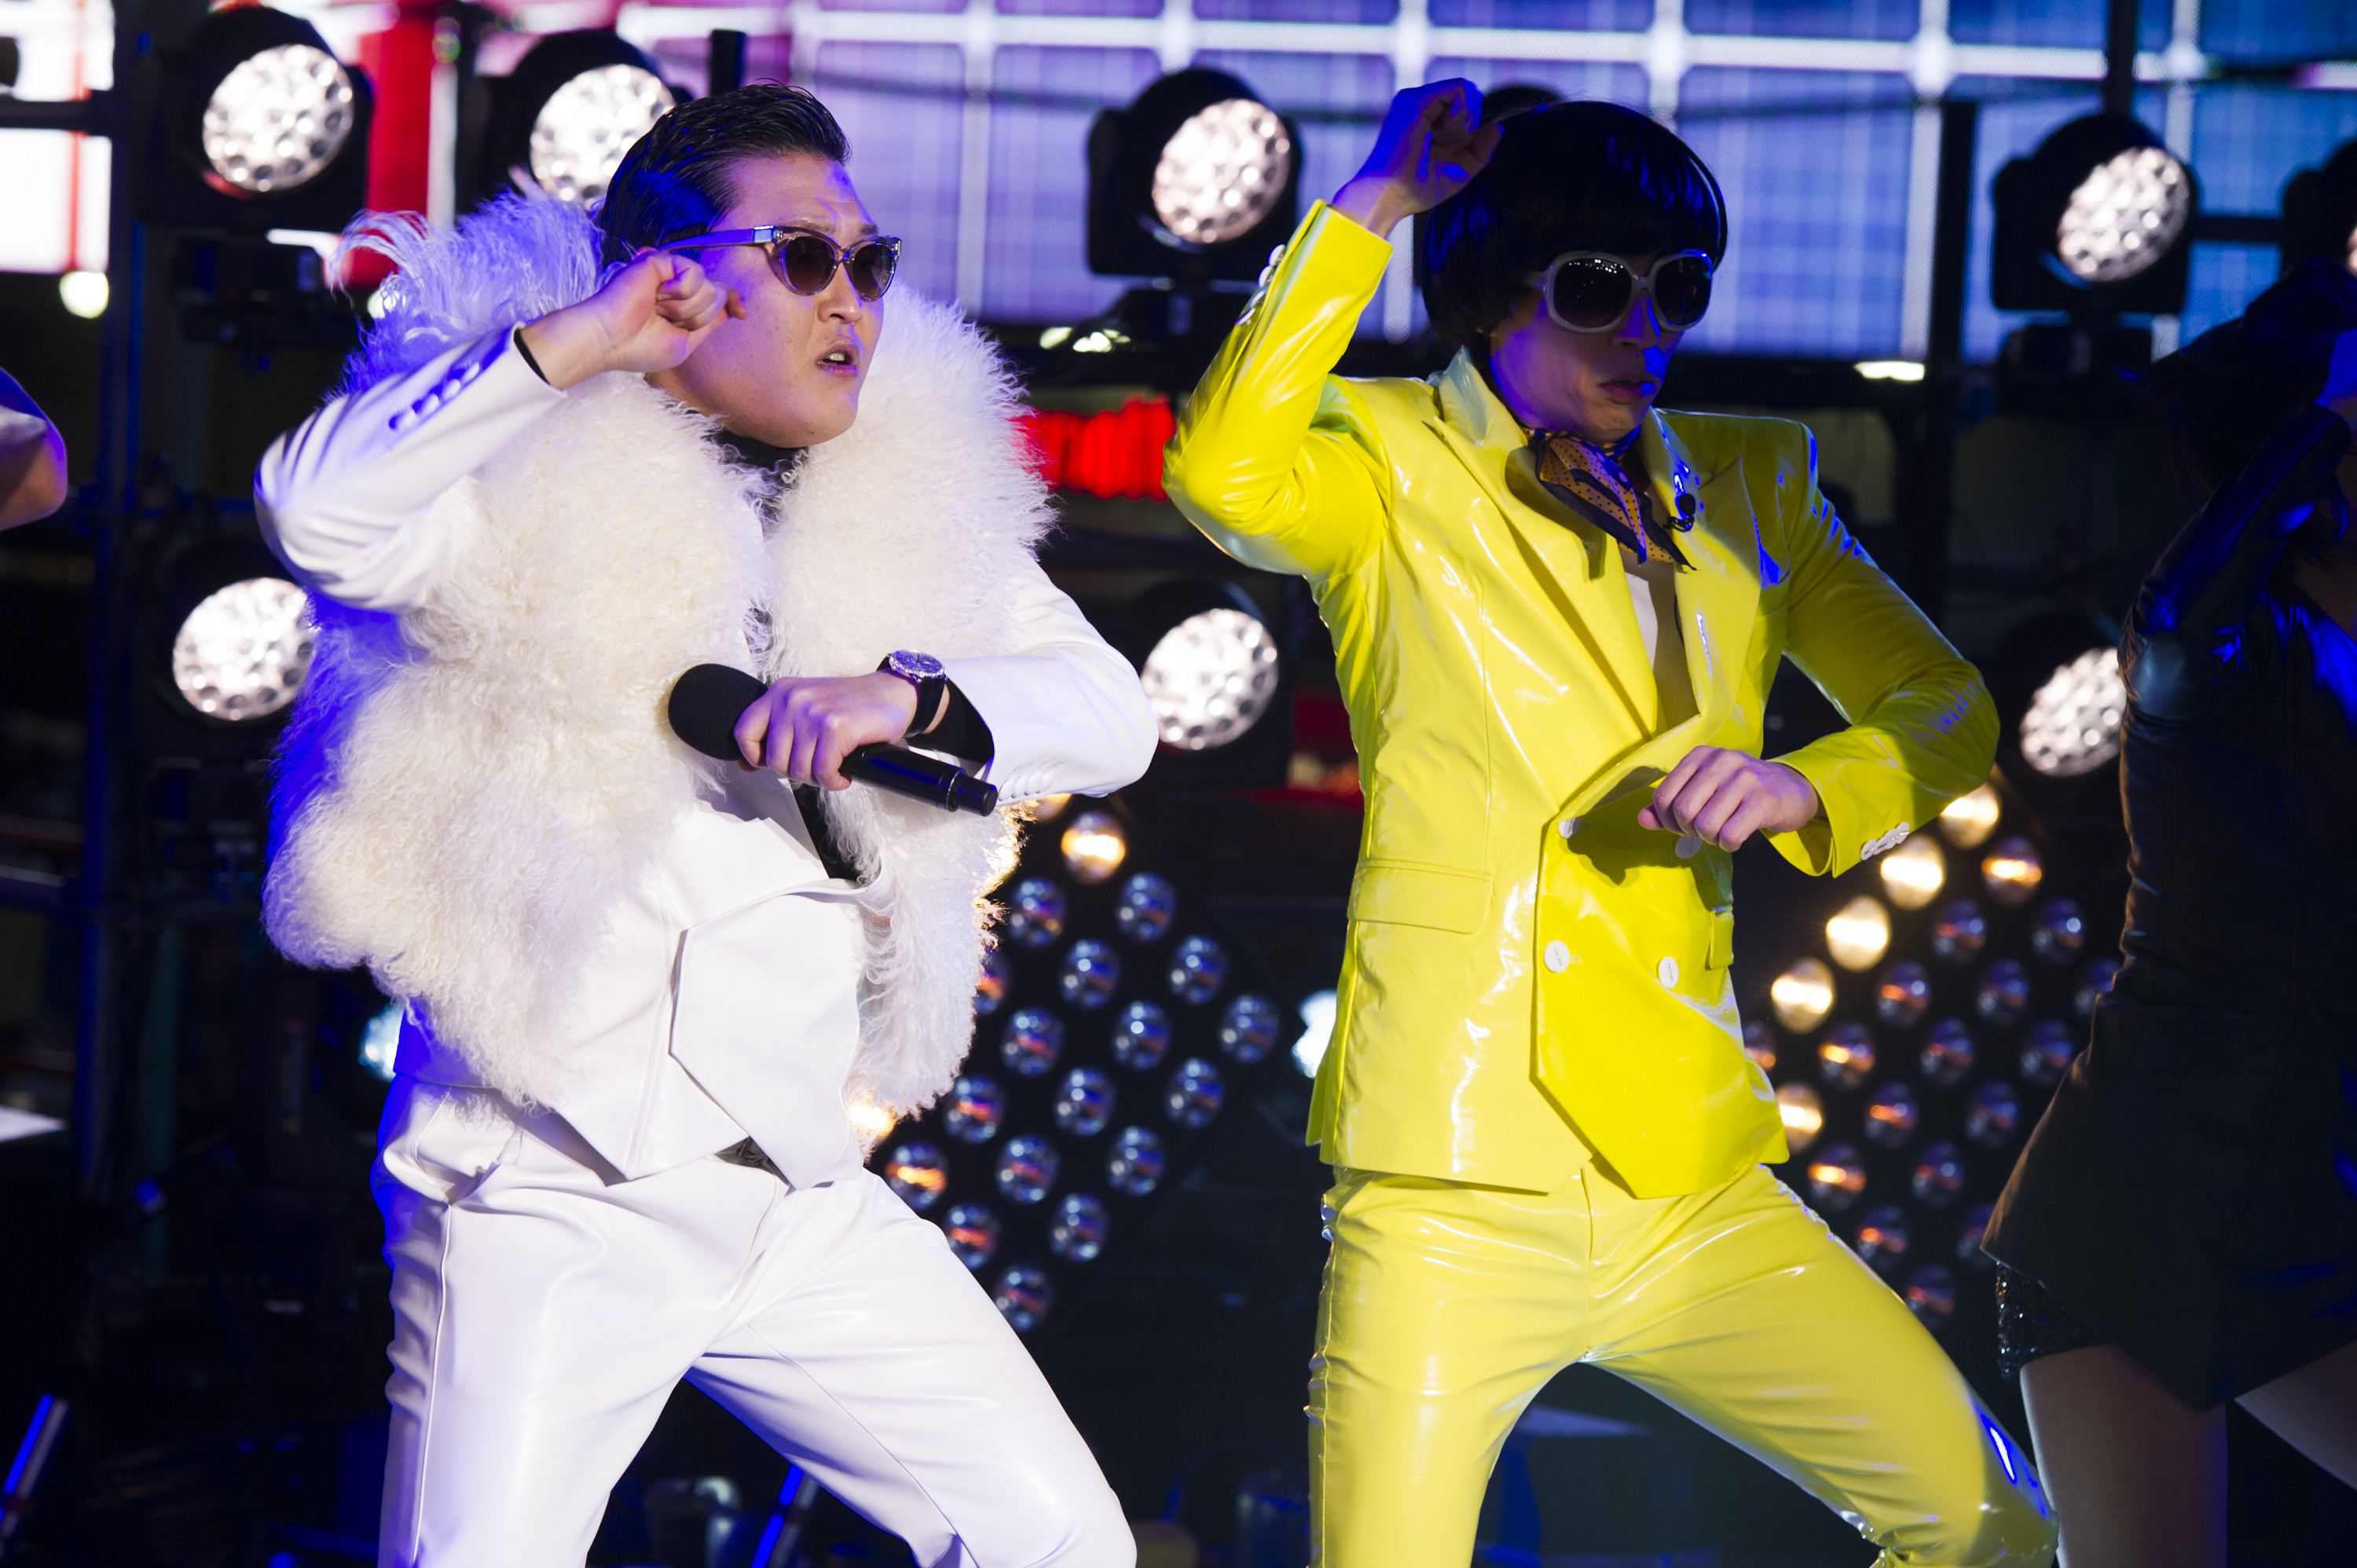 Hade du betalat för att se "Gangnam style"?